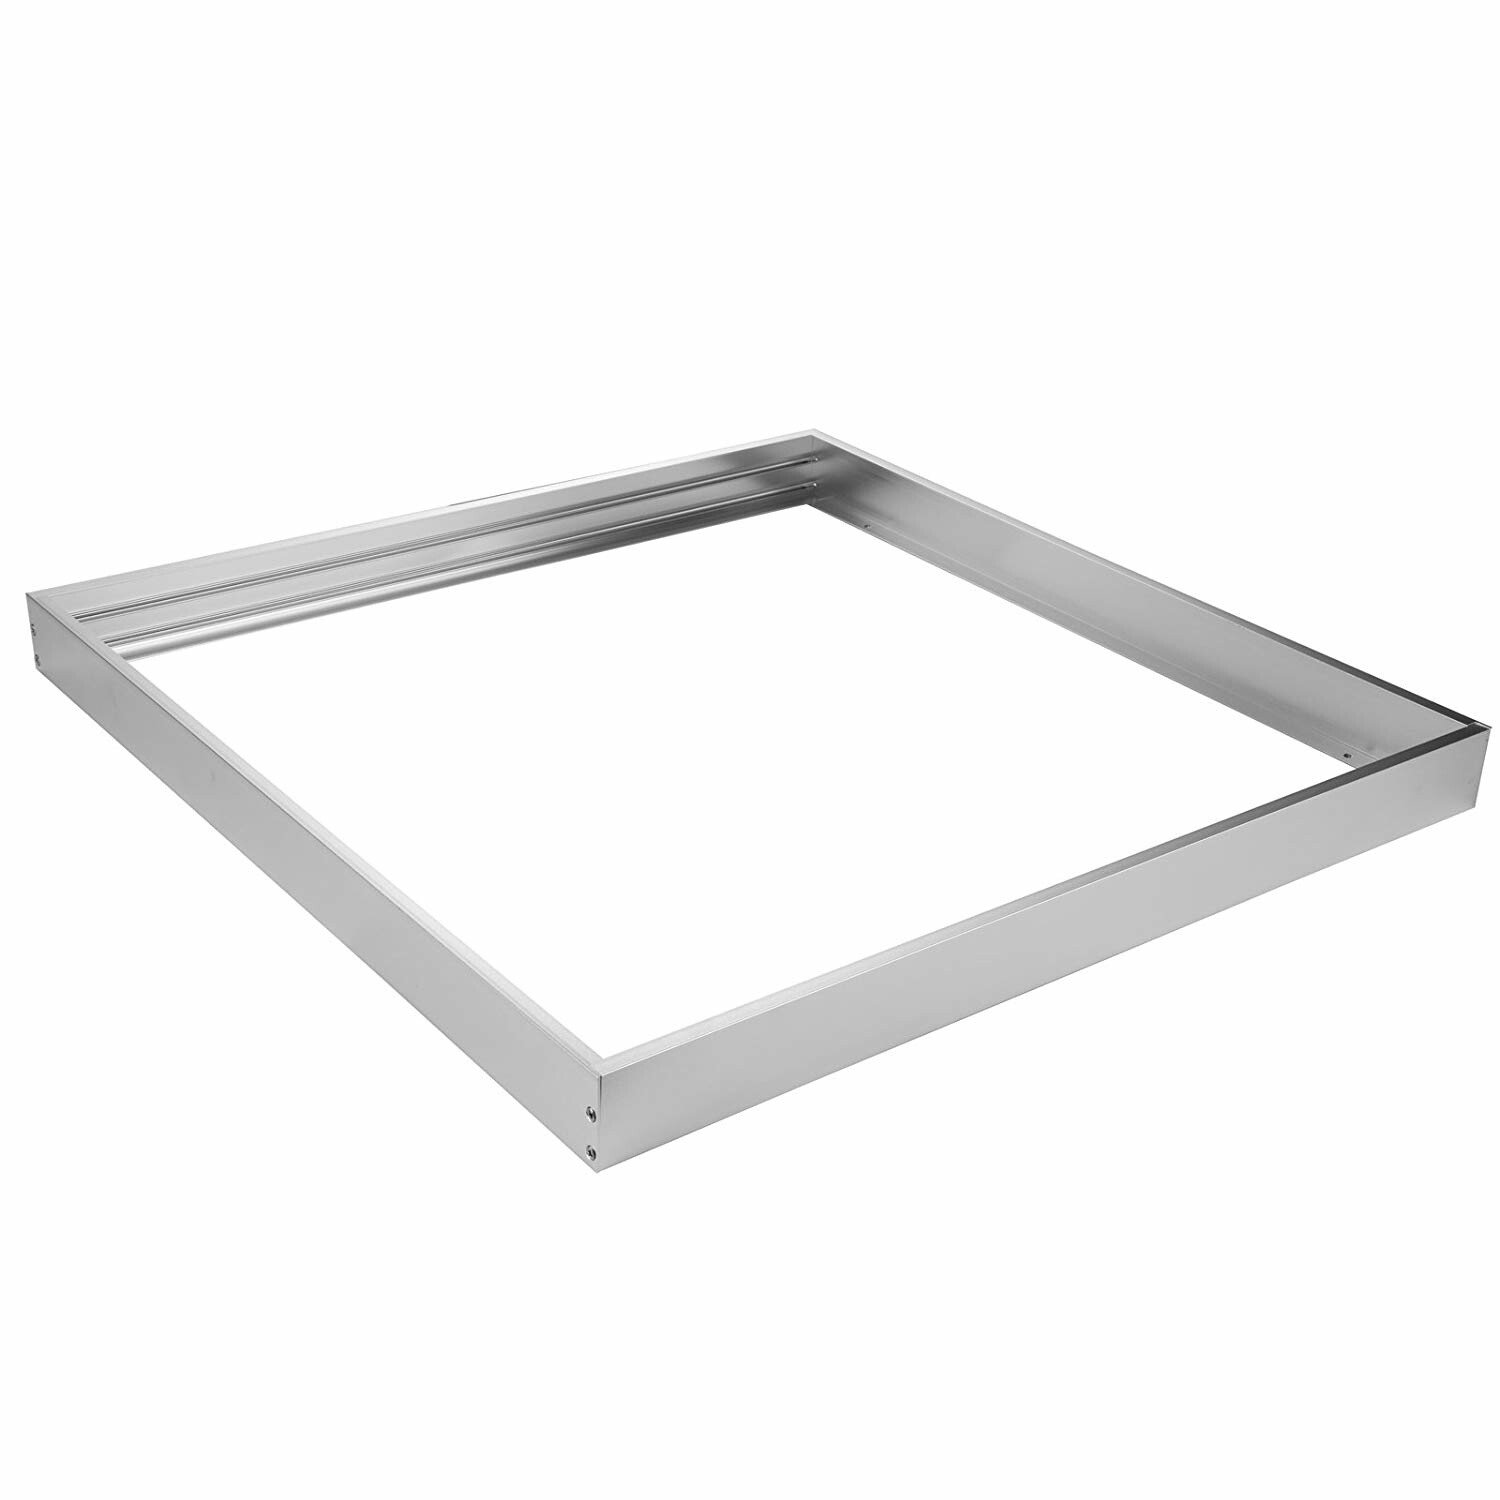 Aufbaurahmen 60x60cm - Aluminium Silber - für LED Panel 